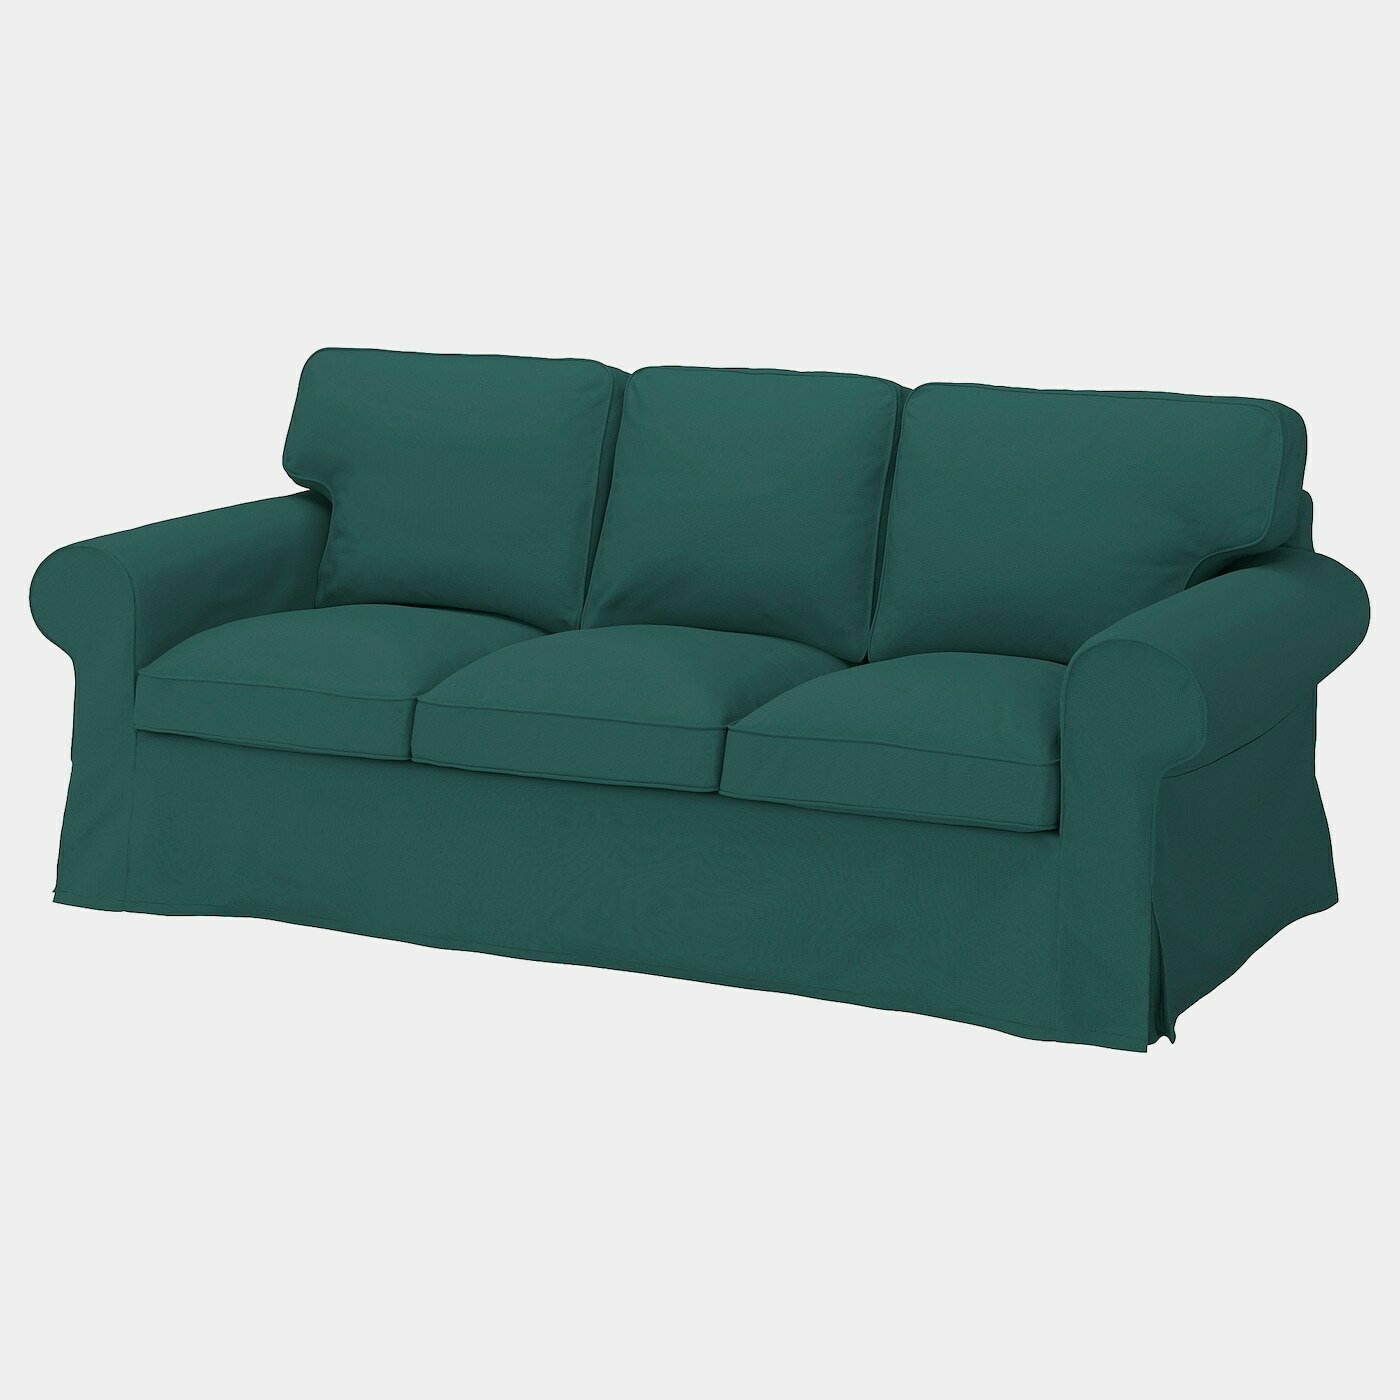 EKTORP Bezug 3er-Sofa  -  - Möbel Ideen für dein Zuhause von Home Trends. Möbel Trends von Social Media Influencer für dein Skandi Zuhause.